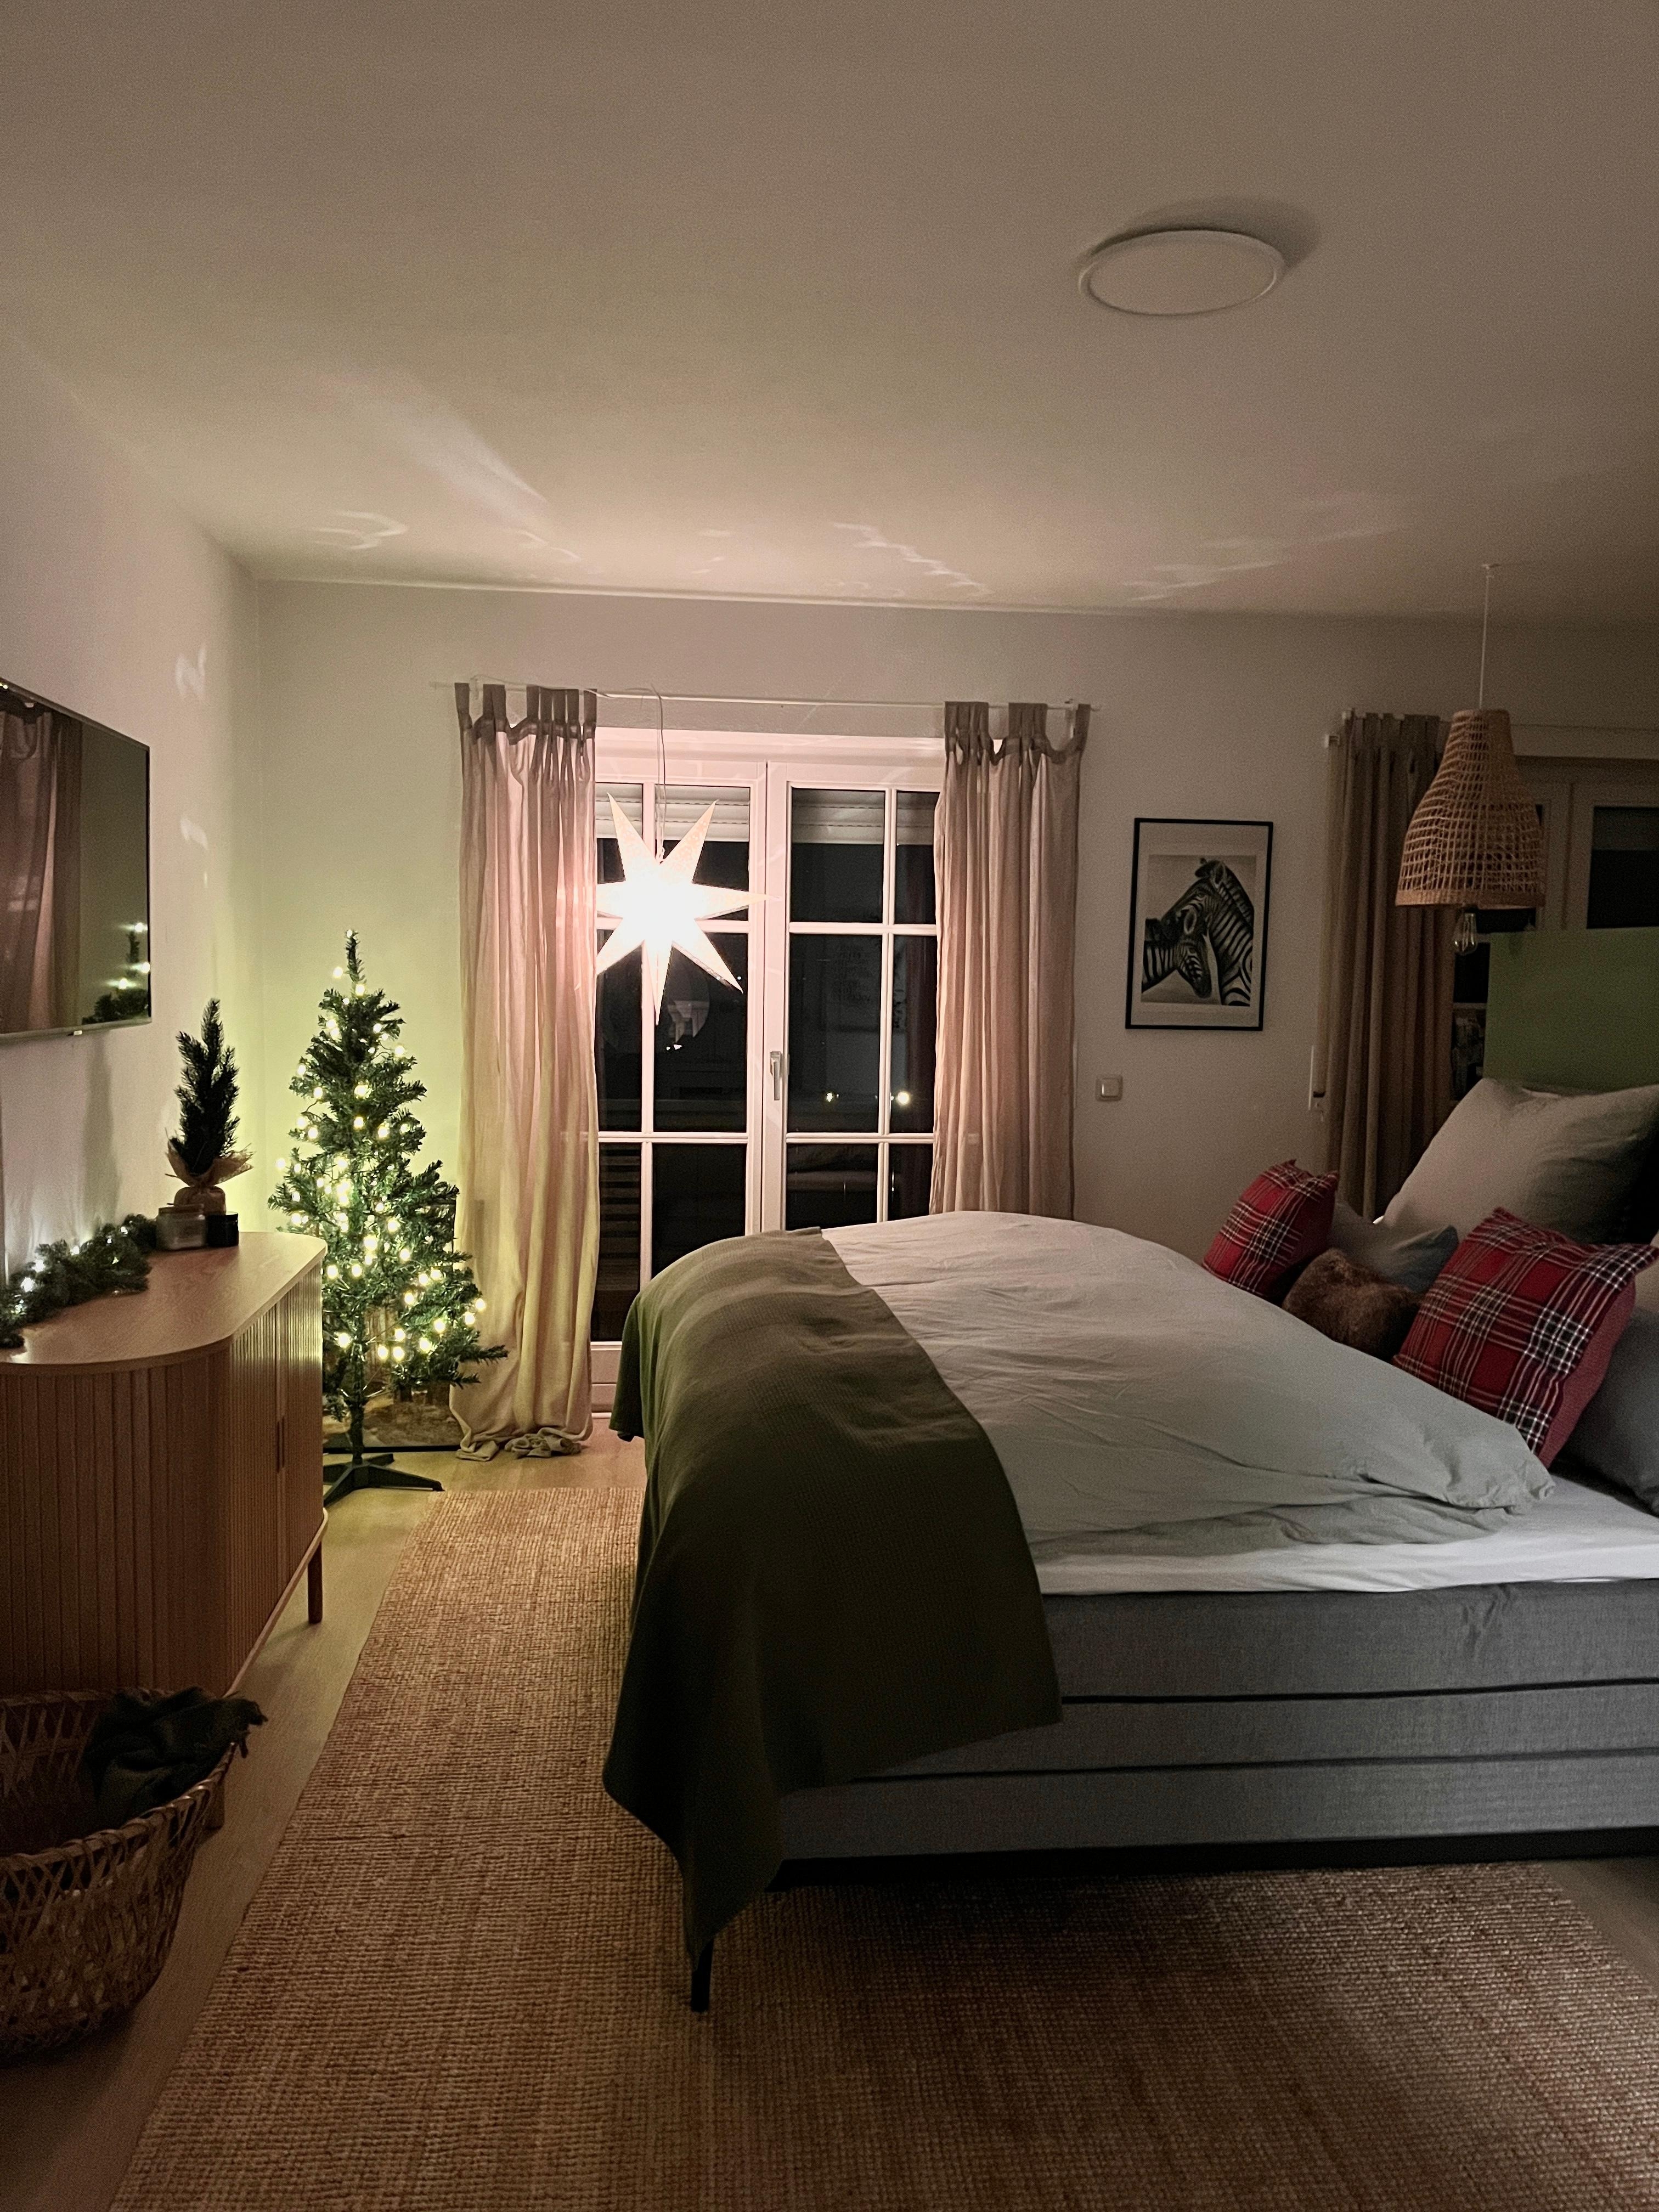 Weihnachtsbaum Nr. 3 steht 🎄 🛏️
#Schlafzimmer#weihnachtsbeleuchtung#cozy#christmaslights#weihnachtszeit#mostwonderfultime#weihnachtsbaum#christmastree